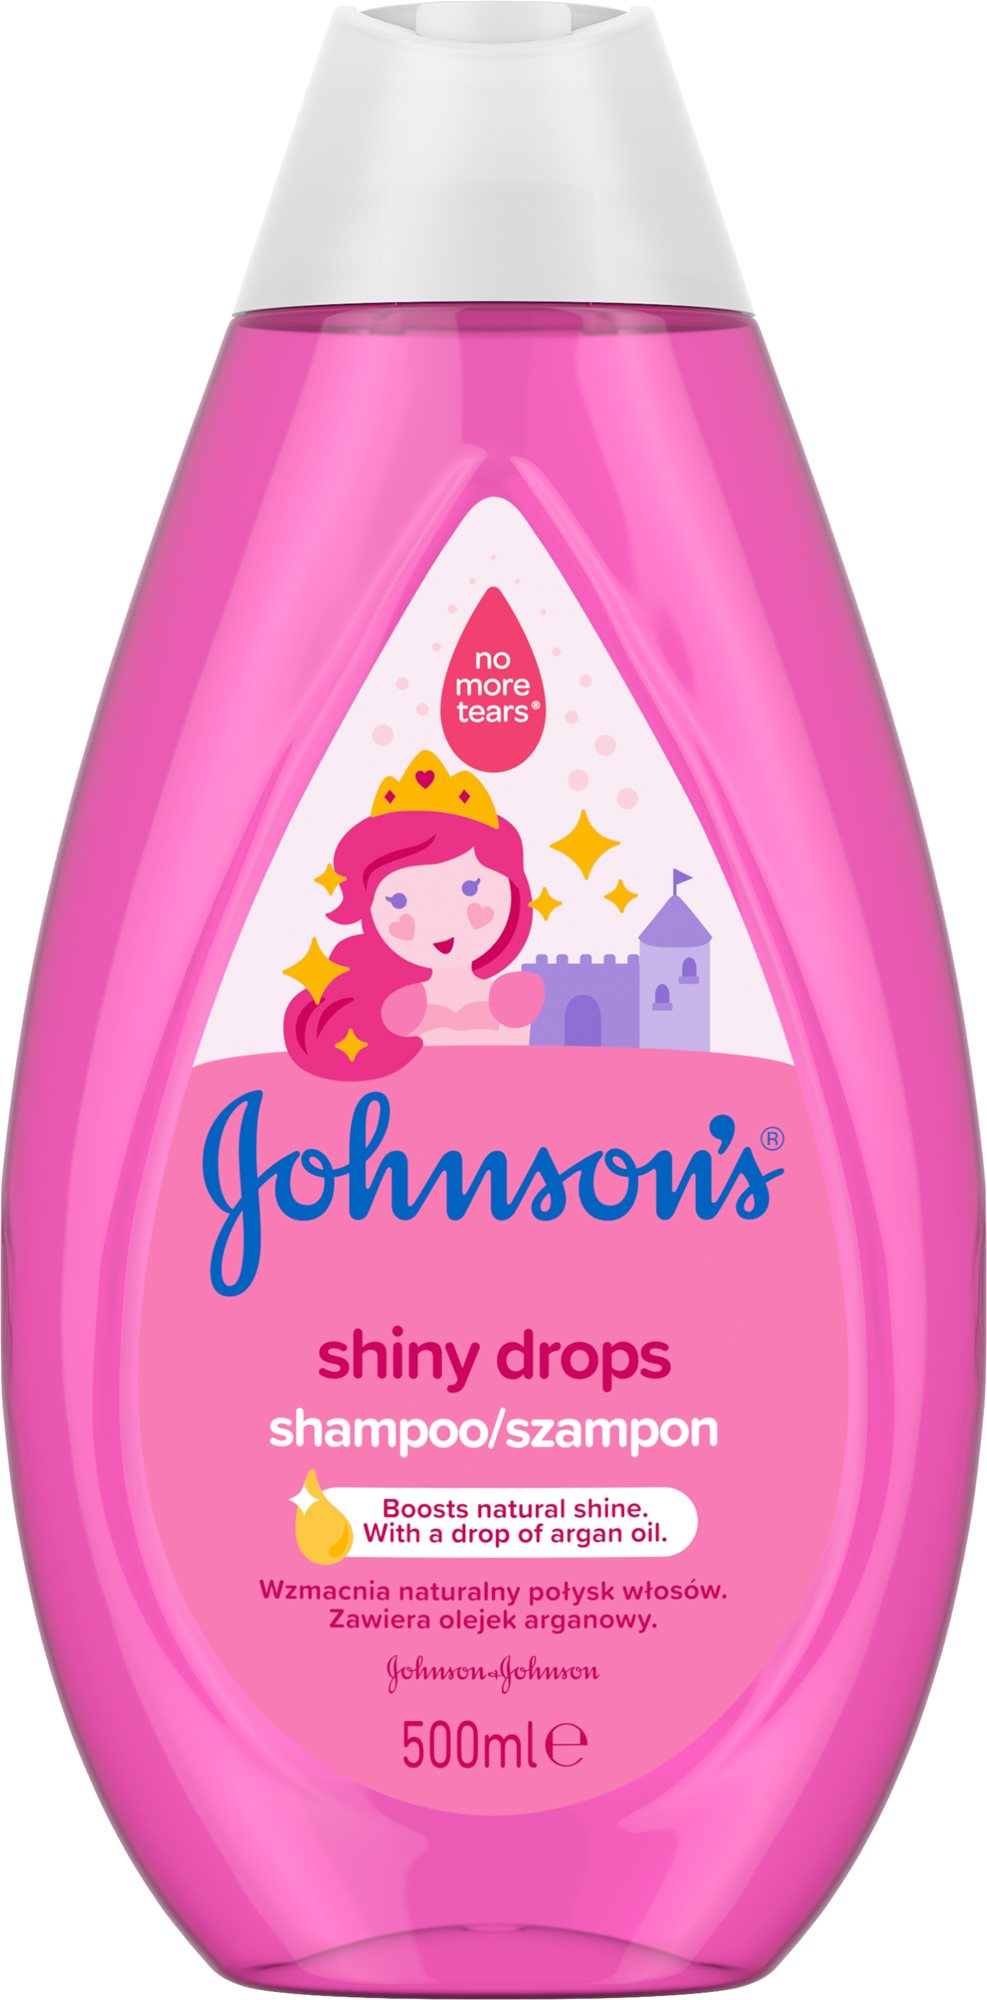 JOHNSON'S BABY Shiny Drops sampon, 500 ml